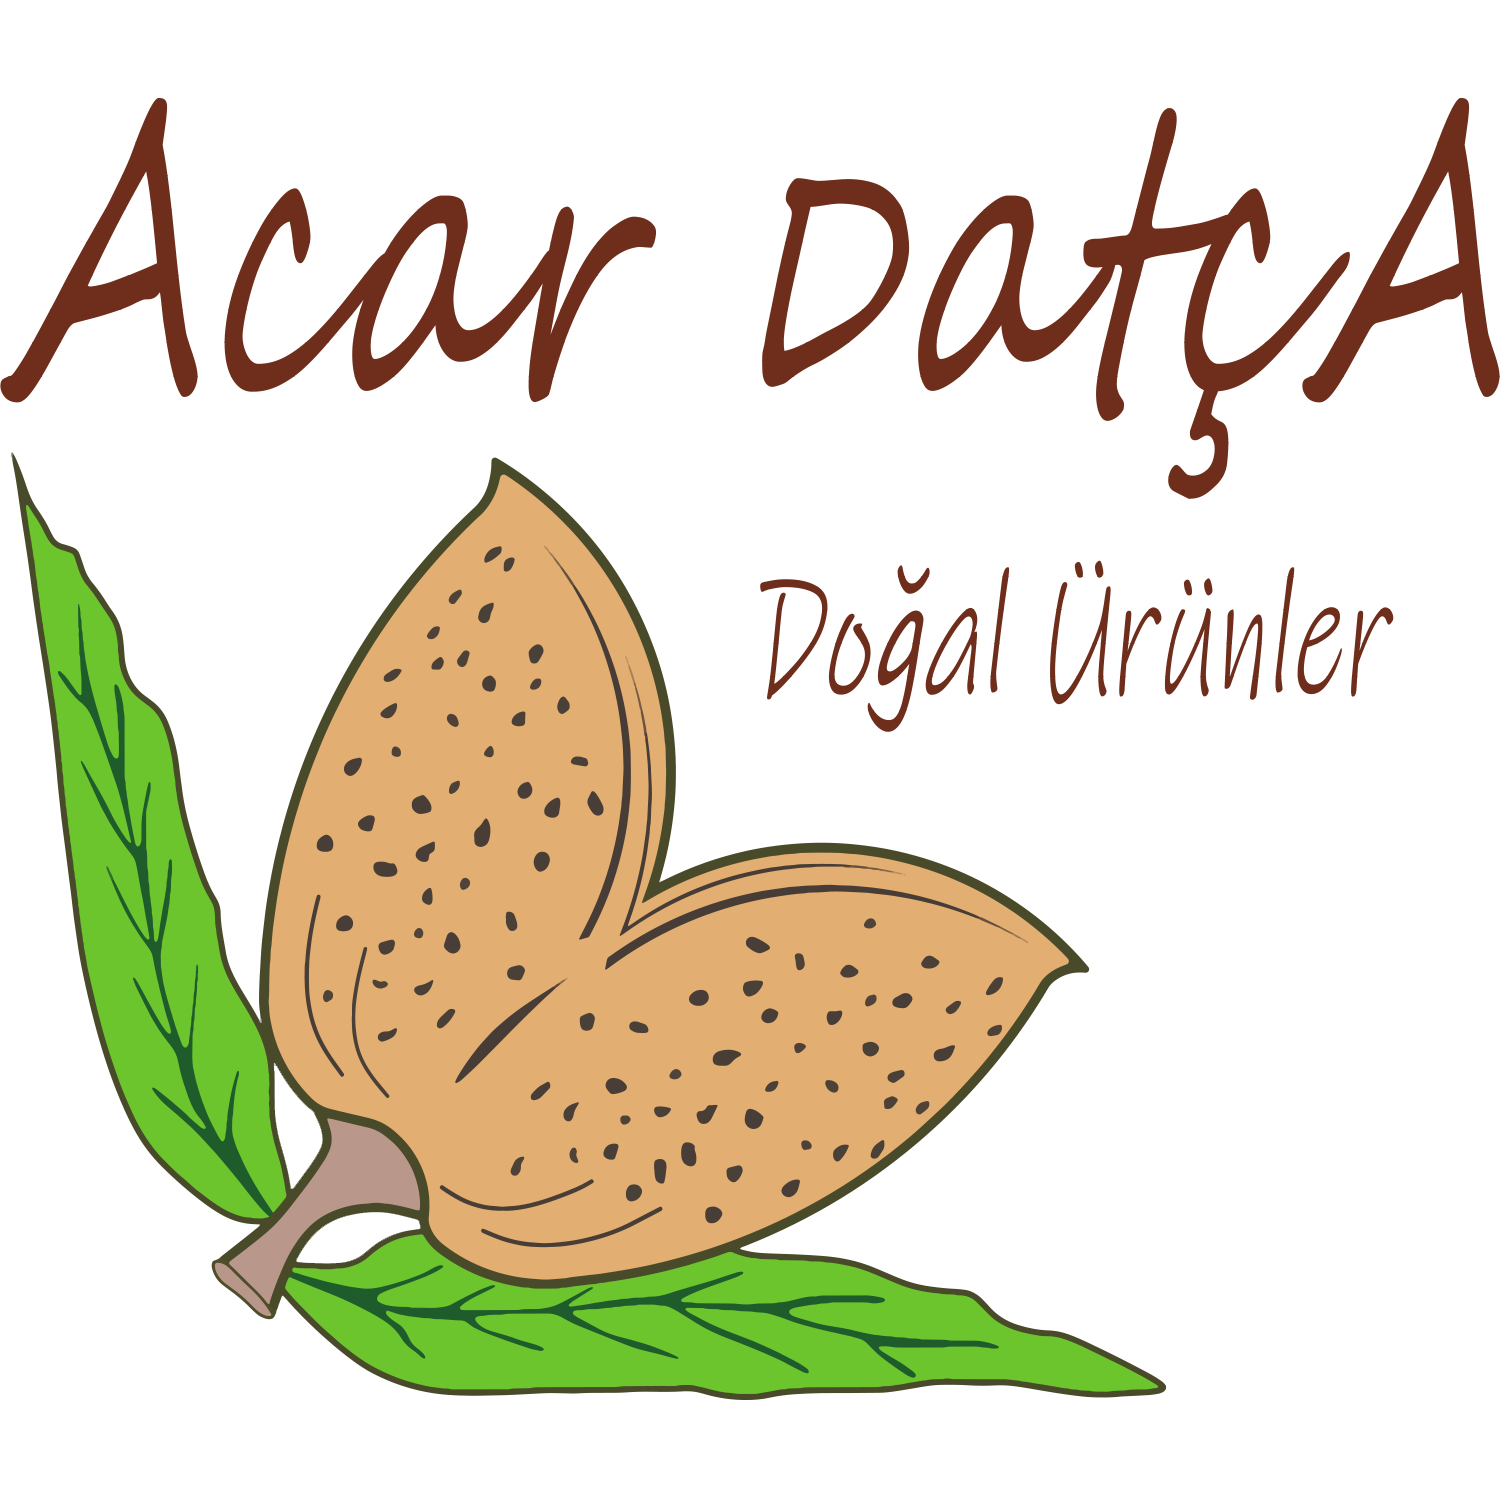 Acar Datça Logo